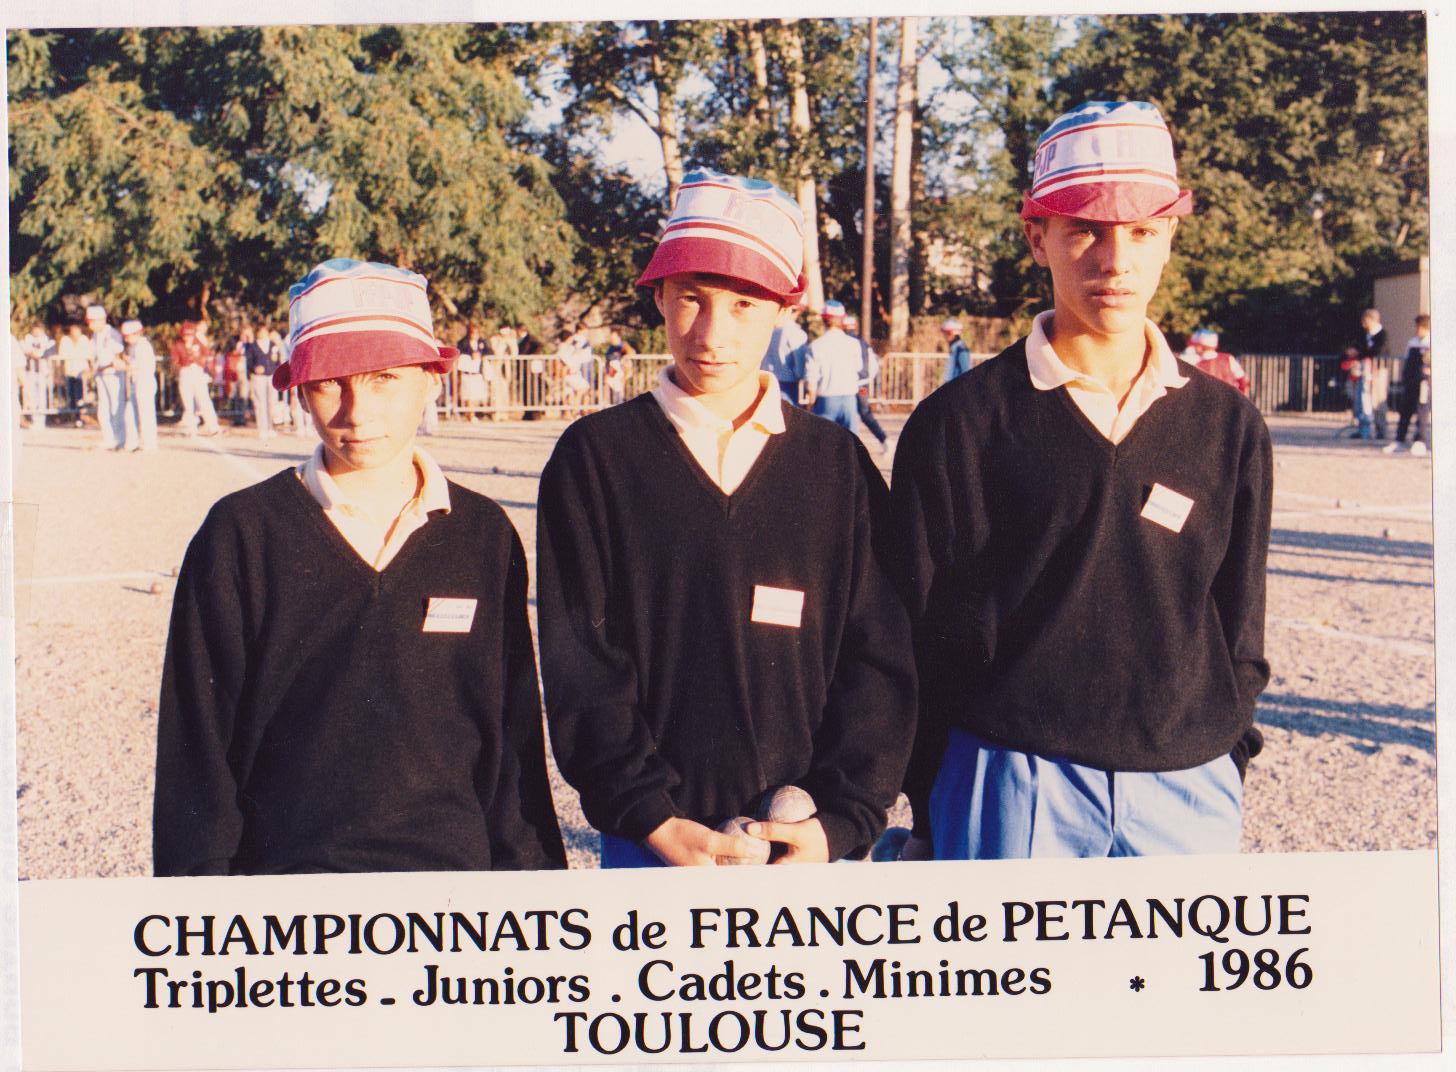 Toulouse championnat de France 1986 .